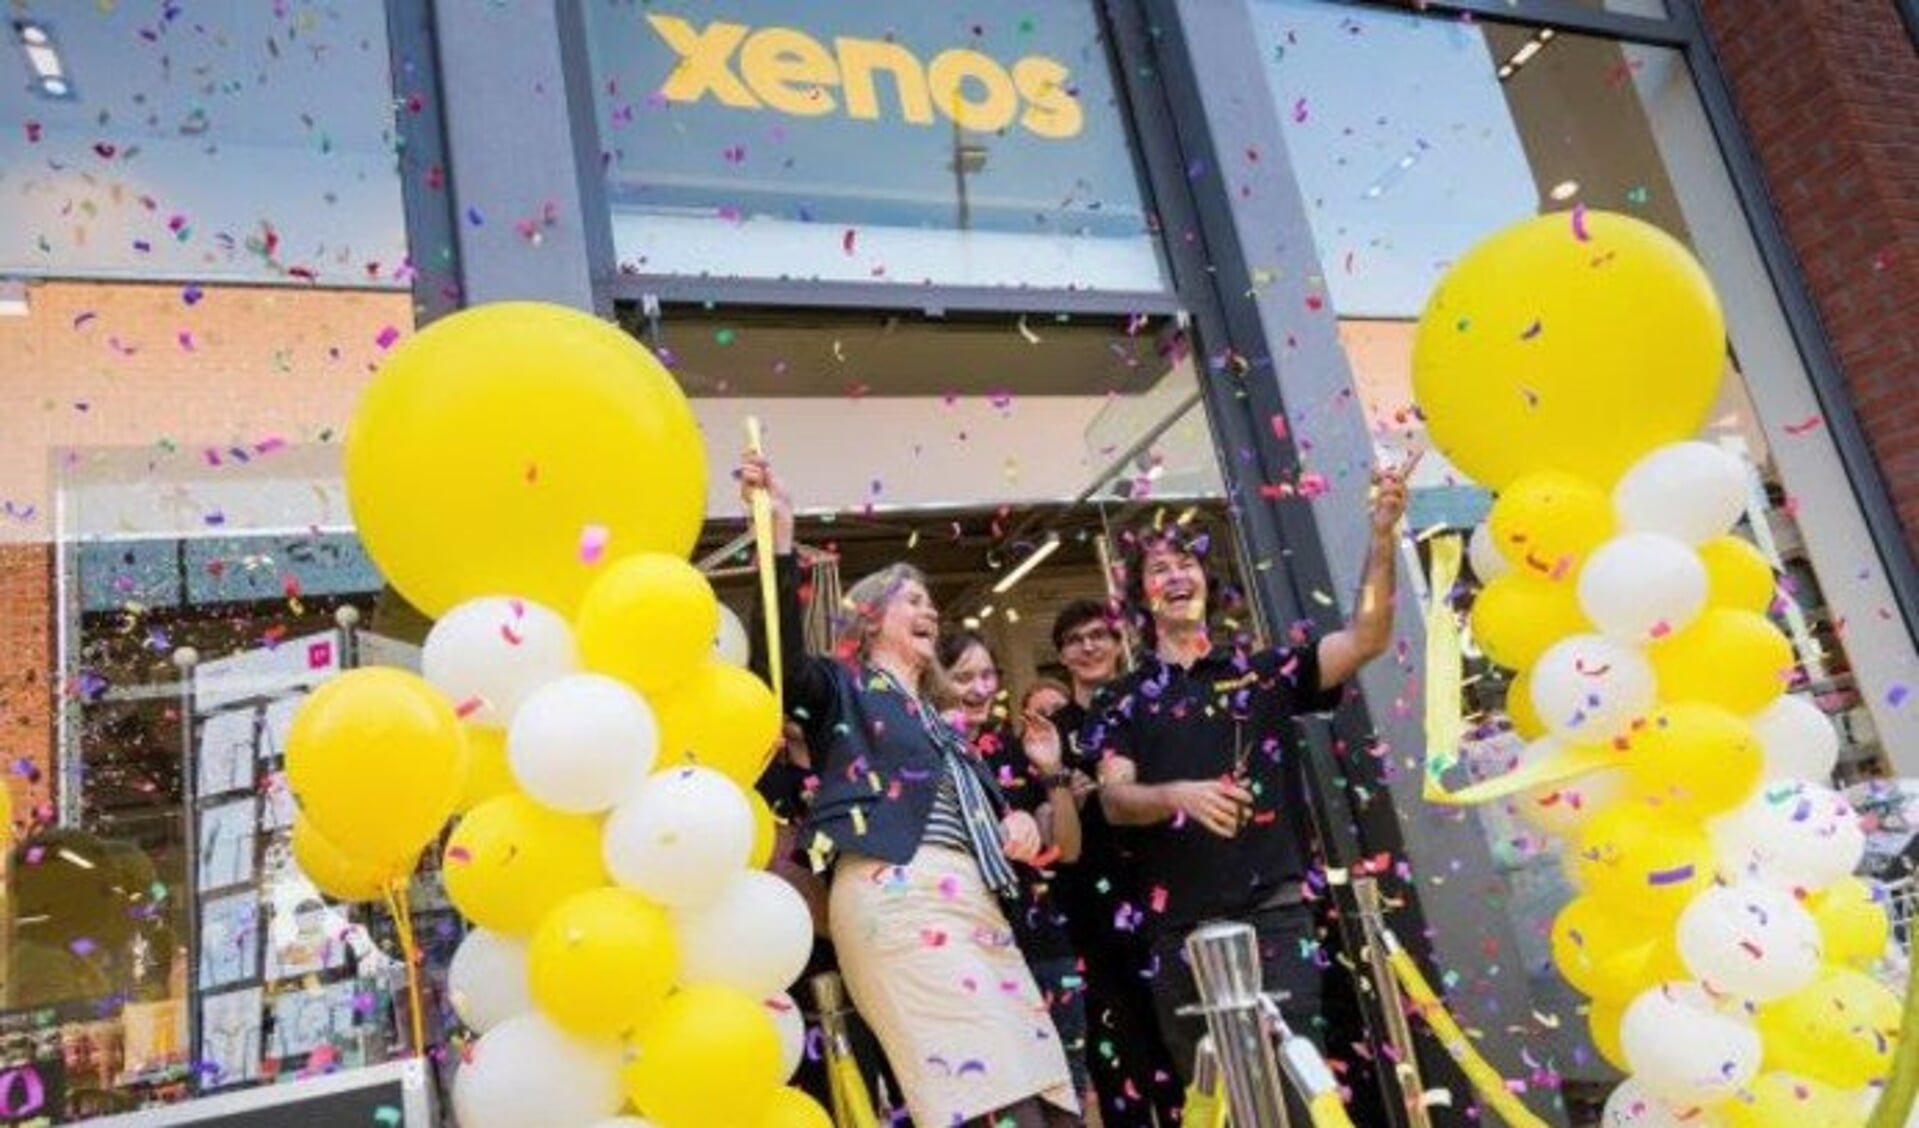 Xenos opent winkel in - Haarlems | Nieuws uit de regio Haarlem